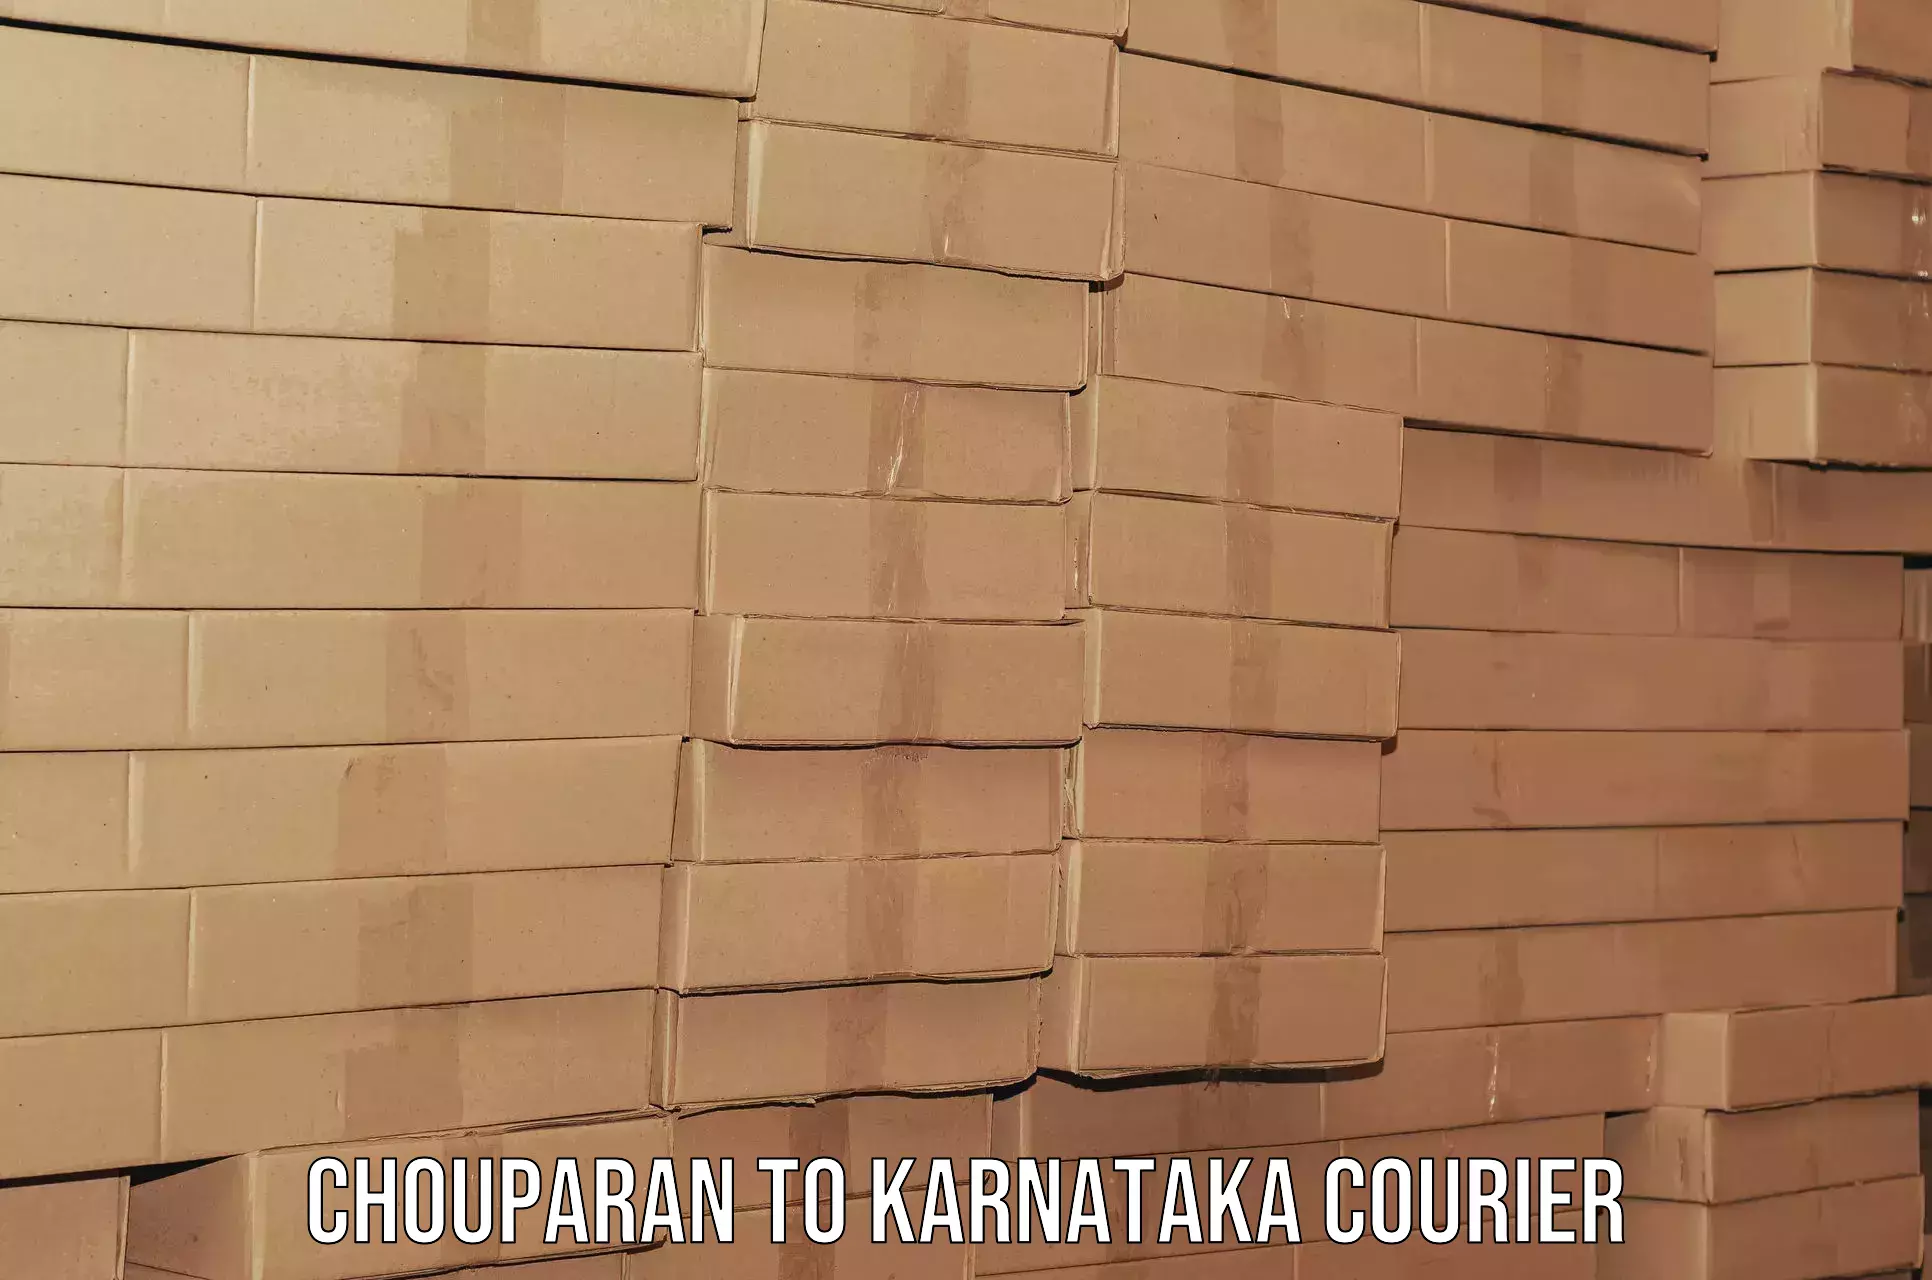 Home shifting experts in Chouparan to Karnataka